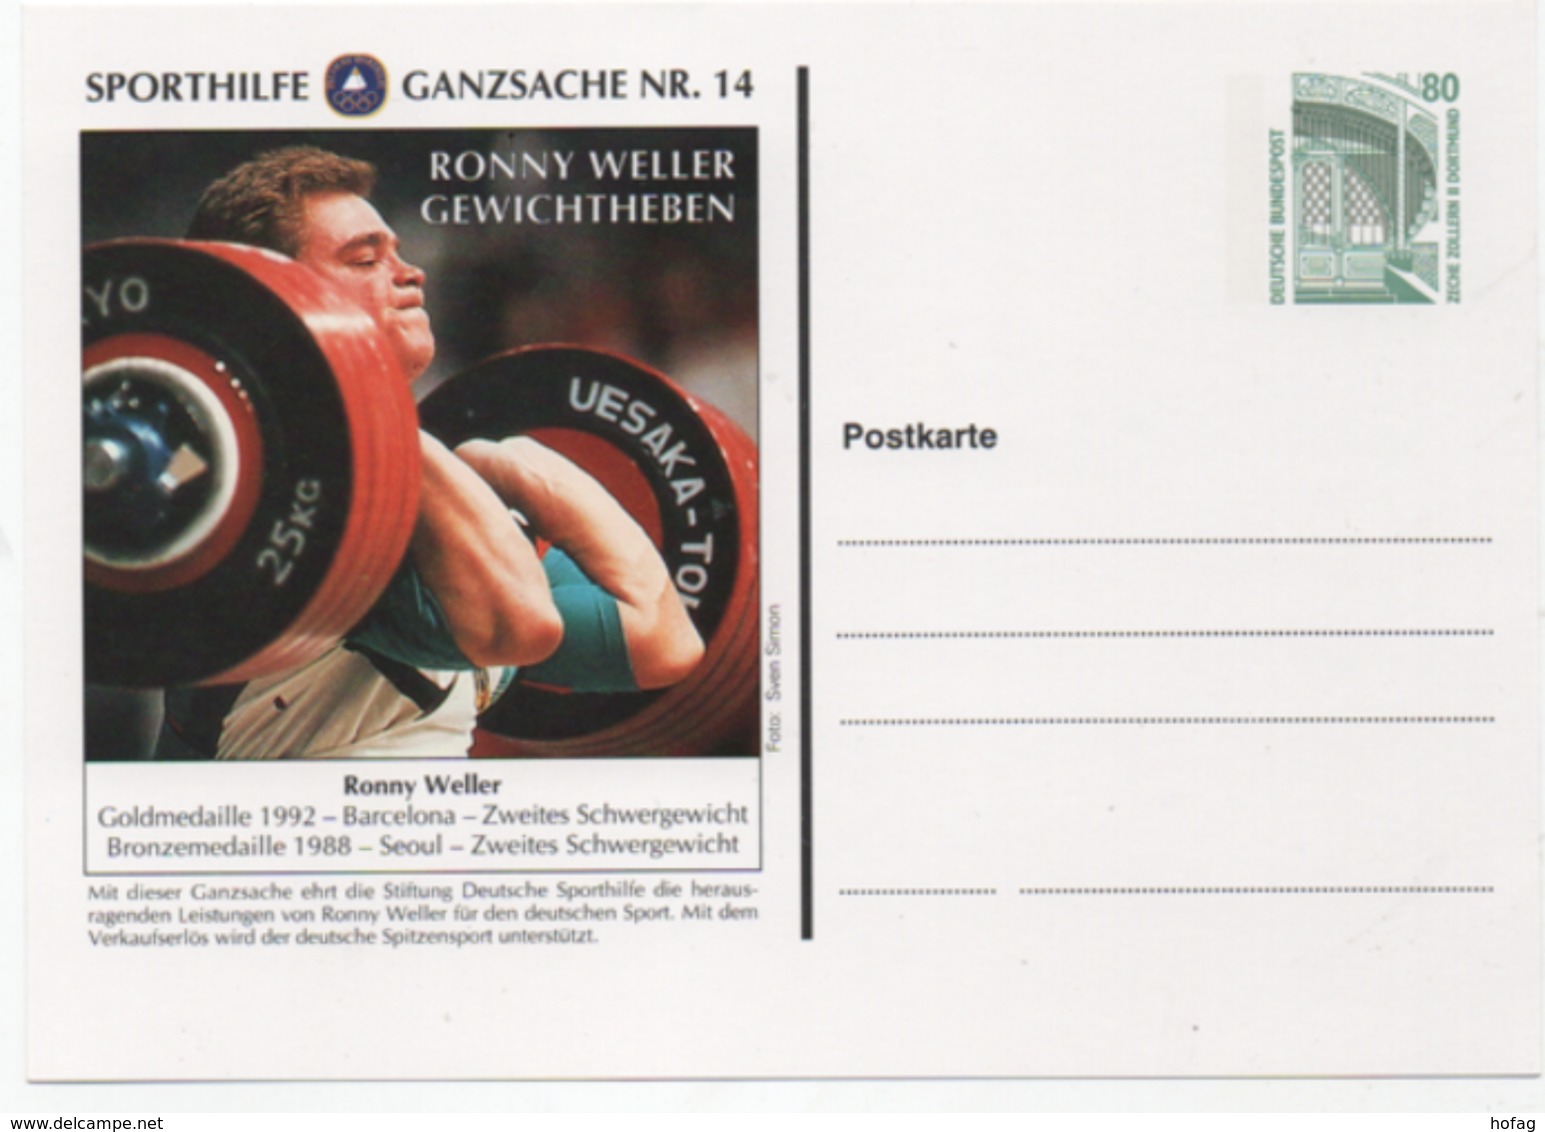 BRD Sporthilfe Ganzsache Nr. 14 Ronny Weller  - Gewichtheben Postfrisch; Postal Stationery Weight Lifting; Mint - Private Postcards - Mint